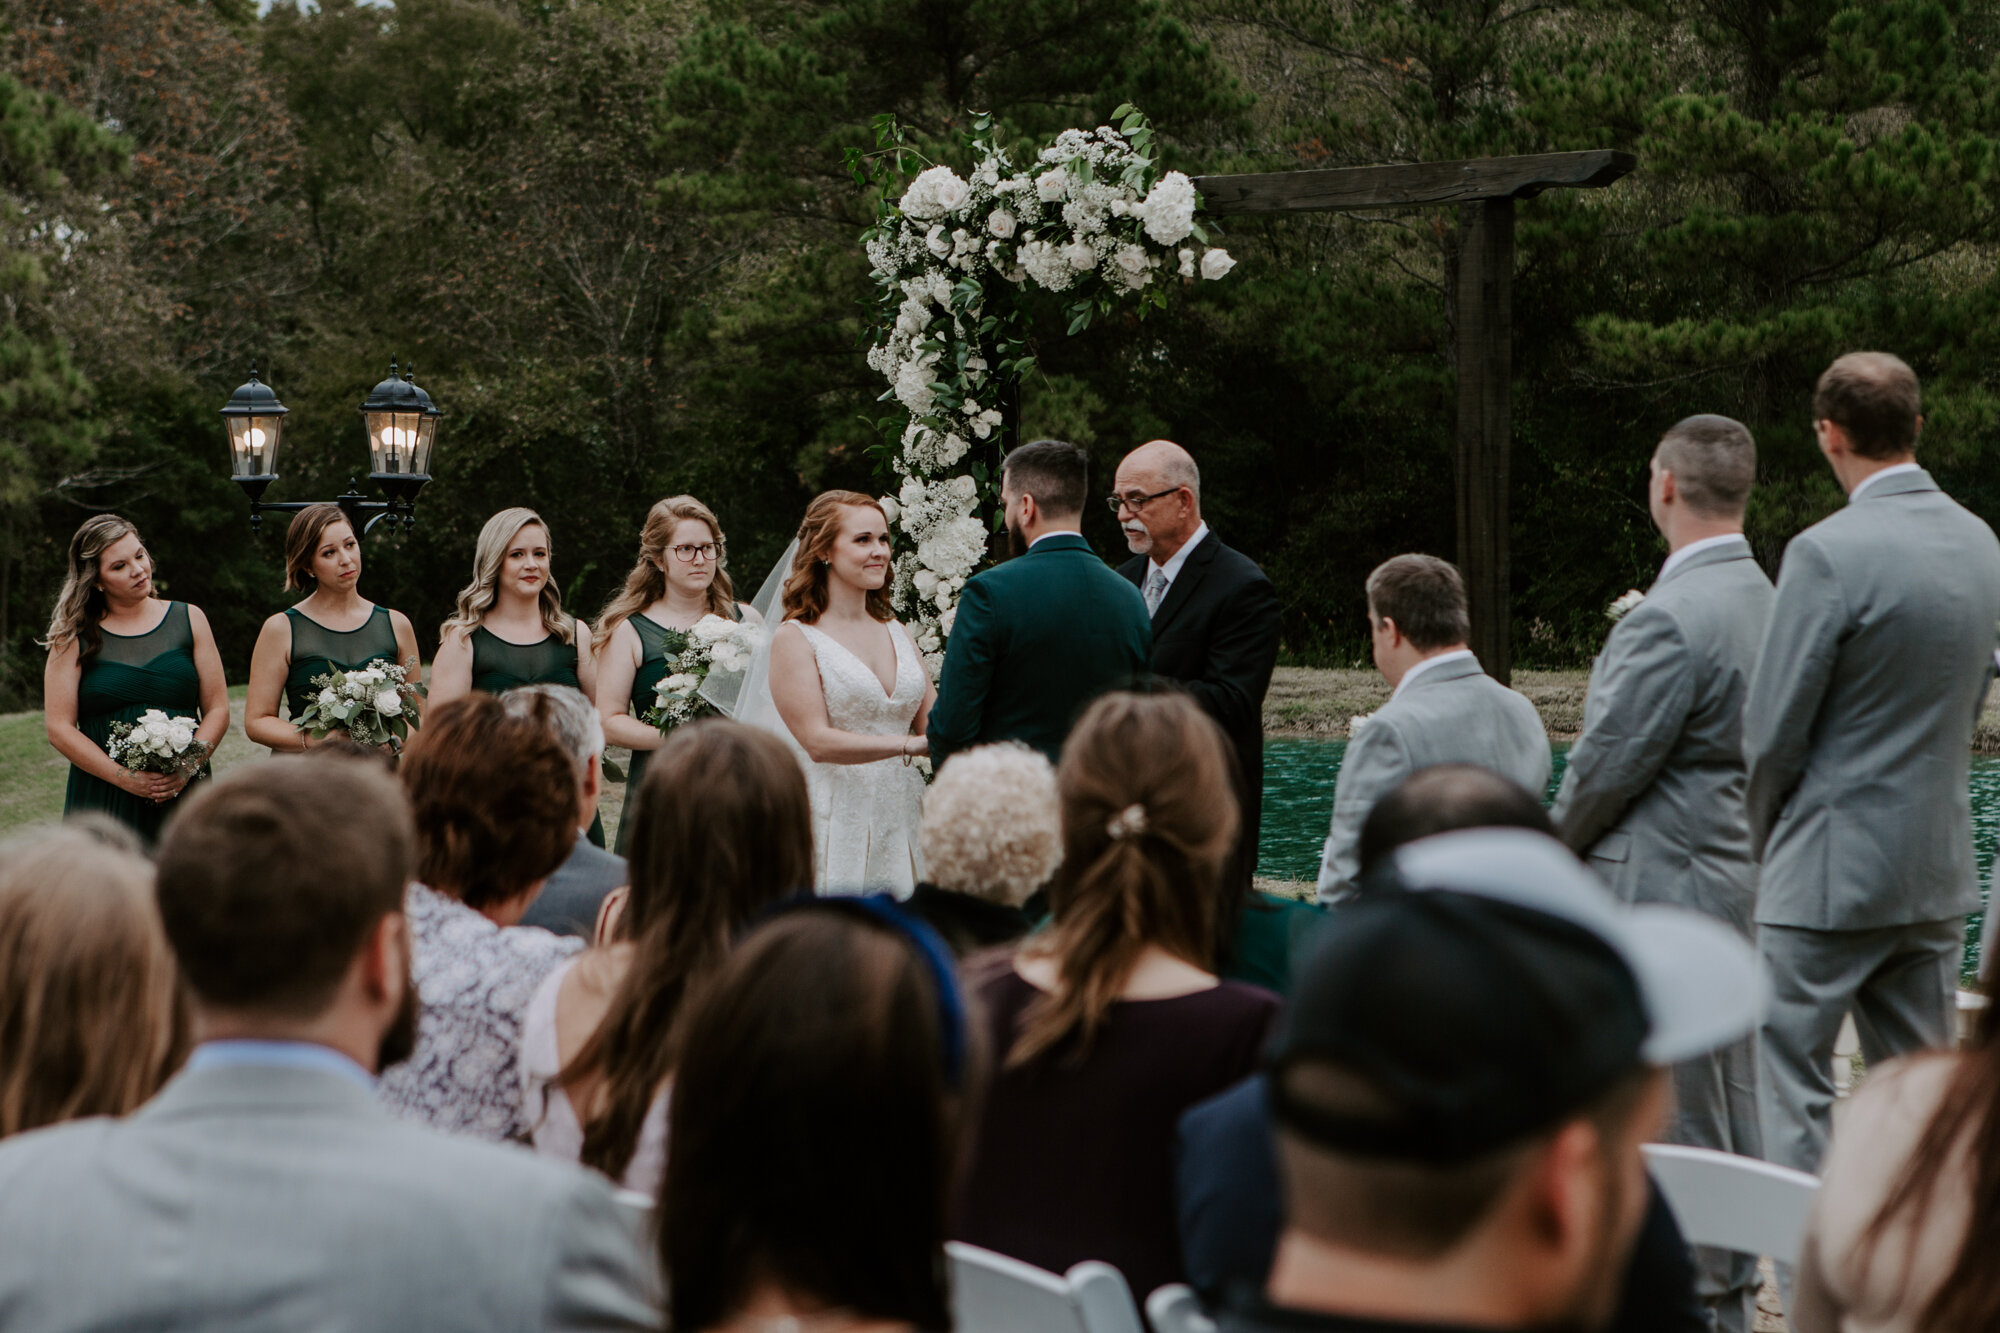 Focus on Bride. Mesmerizing Outdoor Wedding Ceremony in Emerald Green at Venue 311 in Plantersville, TX